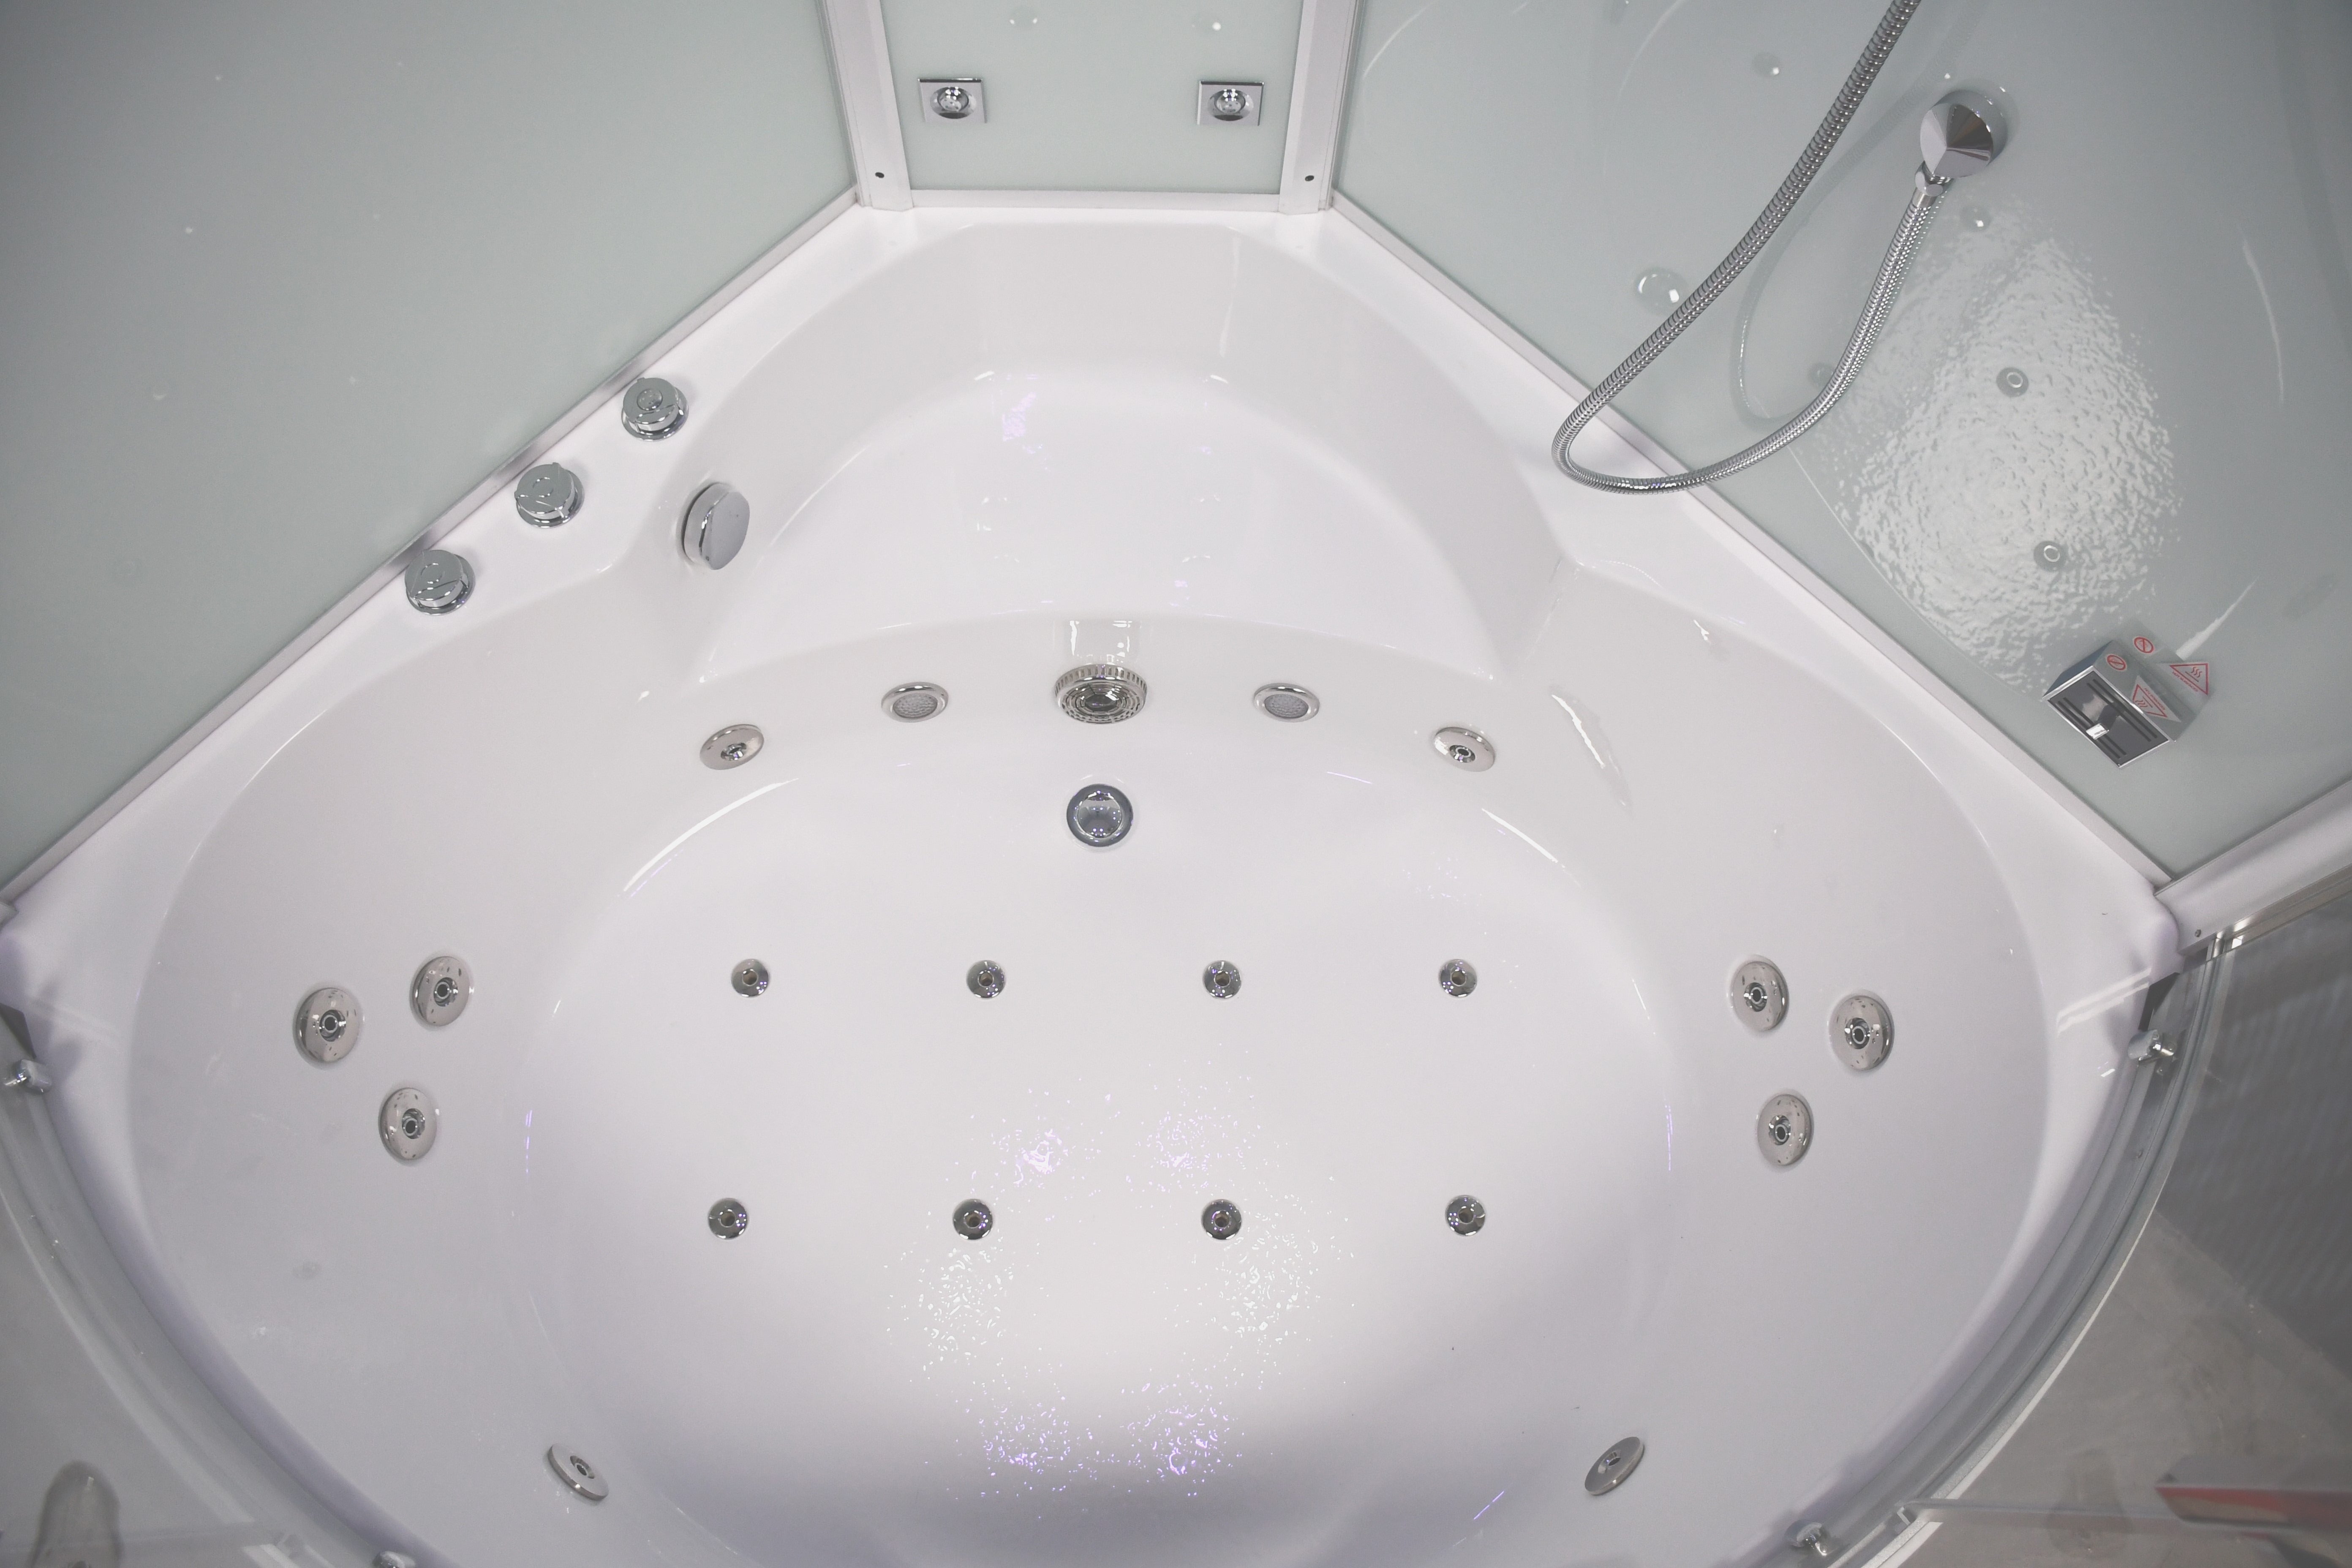 Platinum DA333 Steam Shower Tub Combo - 59" x 59" x 89"